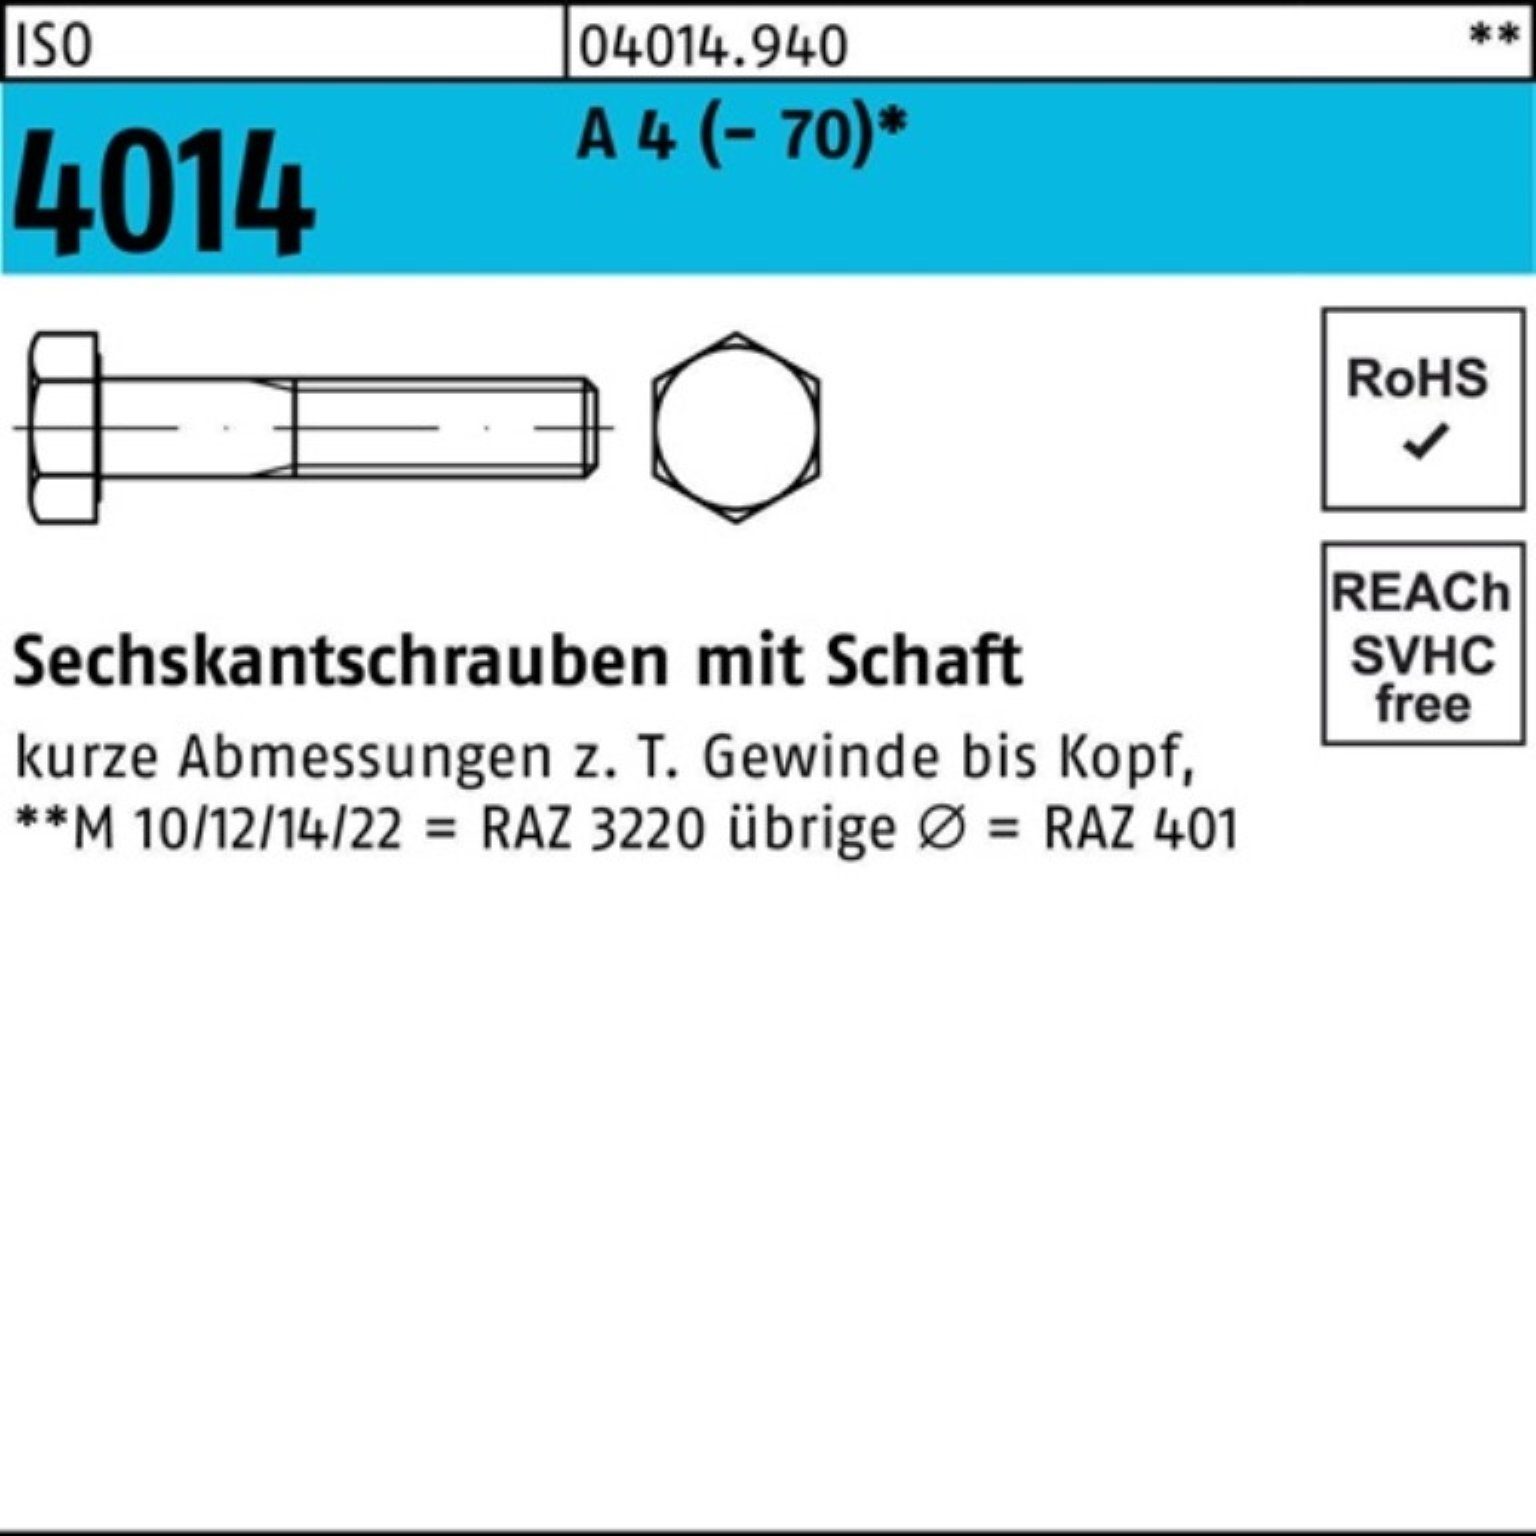 Bufab Sechskantschraube 100er Pack Sechskantschraube ISO M36x 4 4014 ISO 110 A Schaft Stück 1